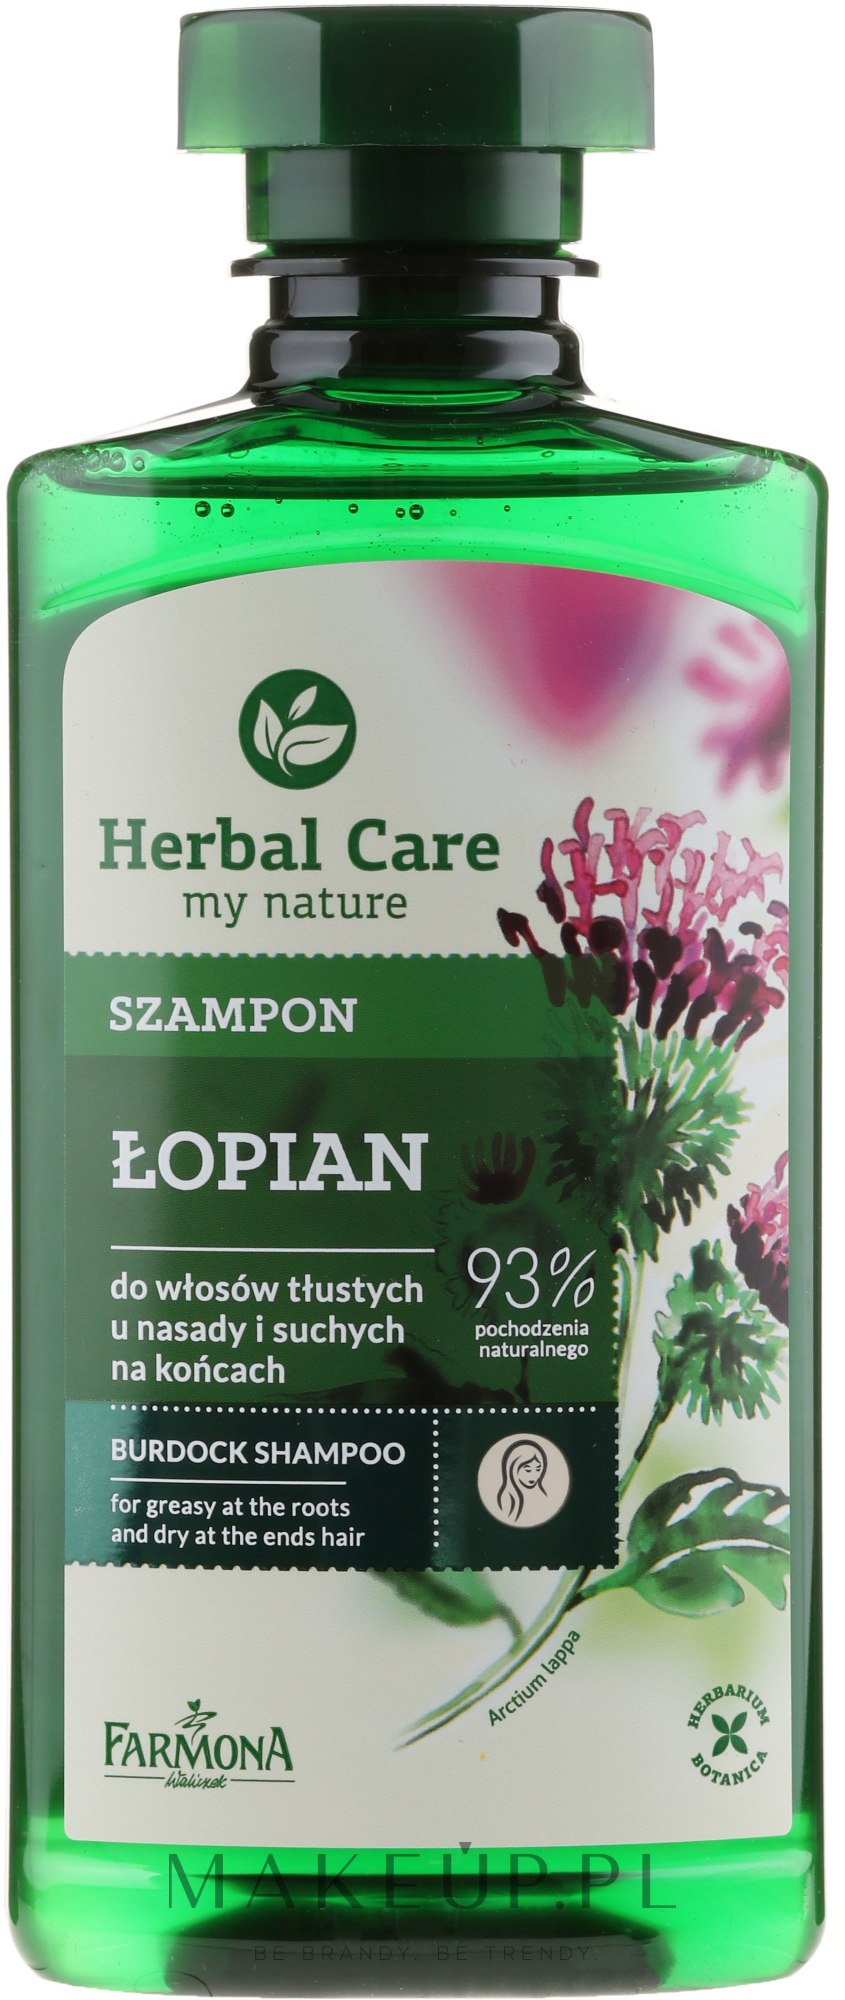 herbal care szampon łopian